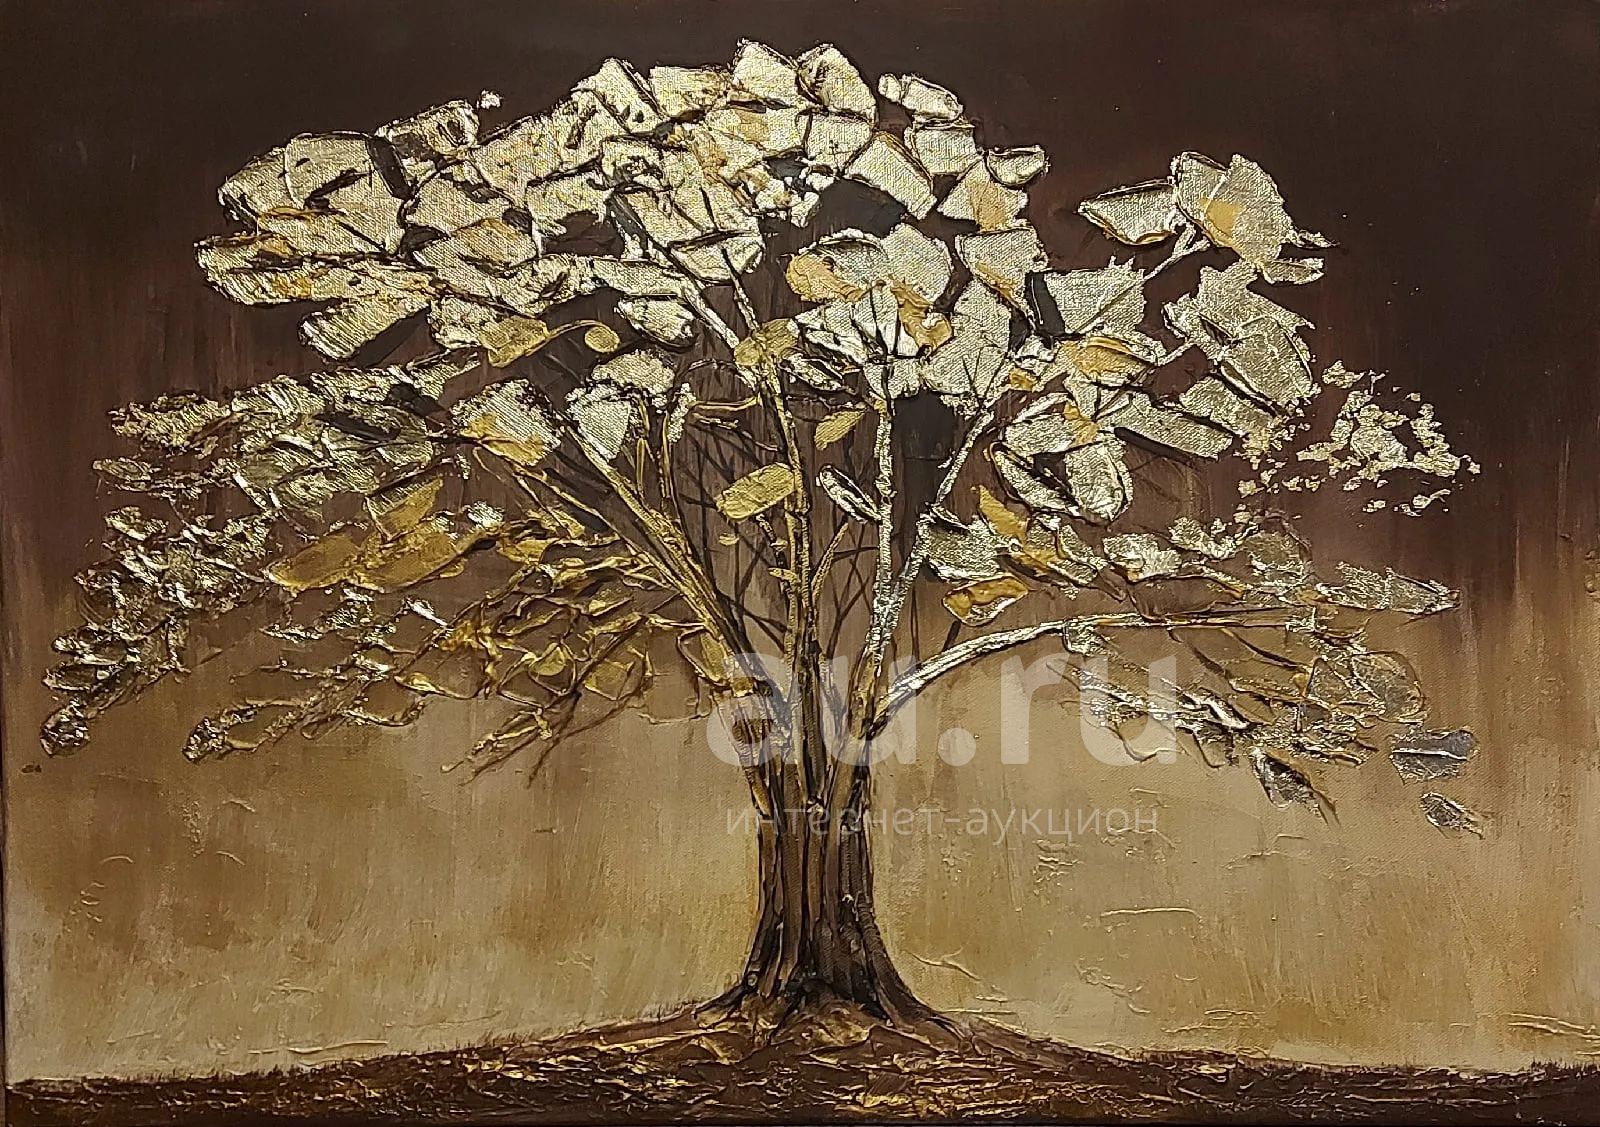 Закат золотит деревья старинной позолотой. Золотое дерево живопись. Дерево с сусальным золотом живопись. Дерево с золотыми листьями картина. Картины с золотой поталью.